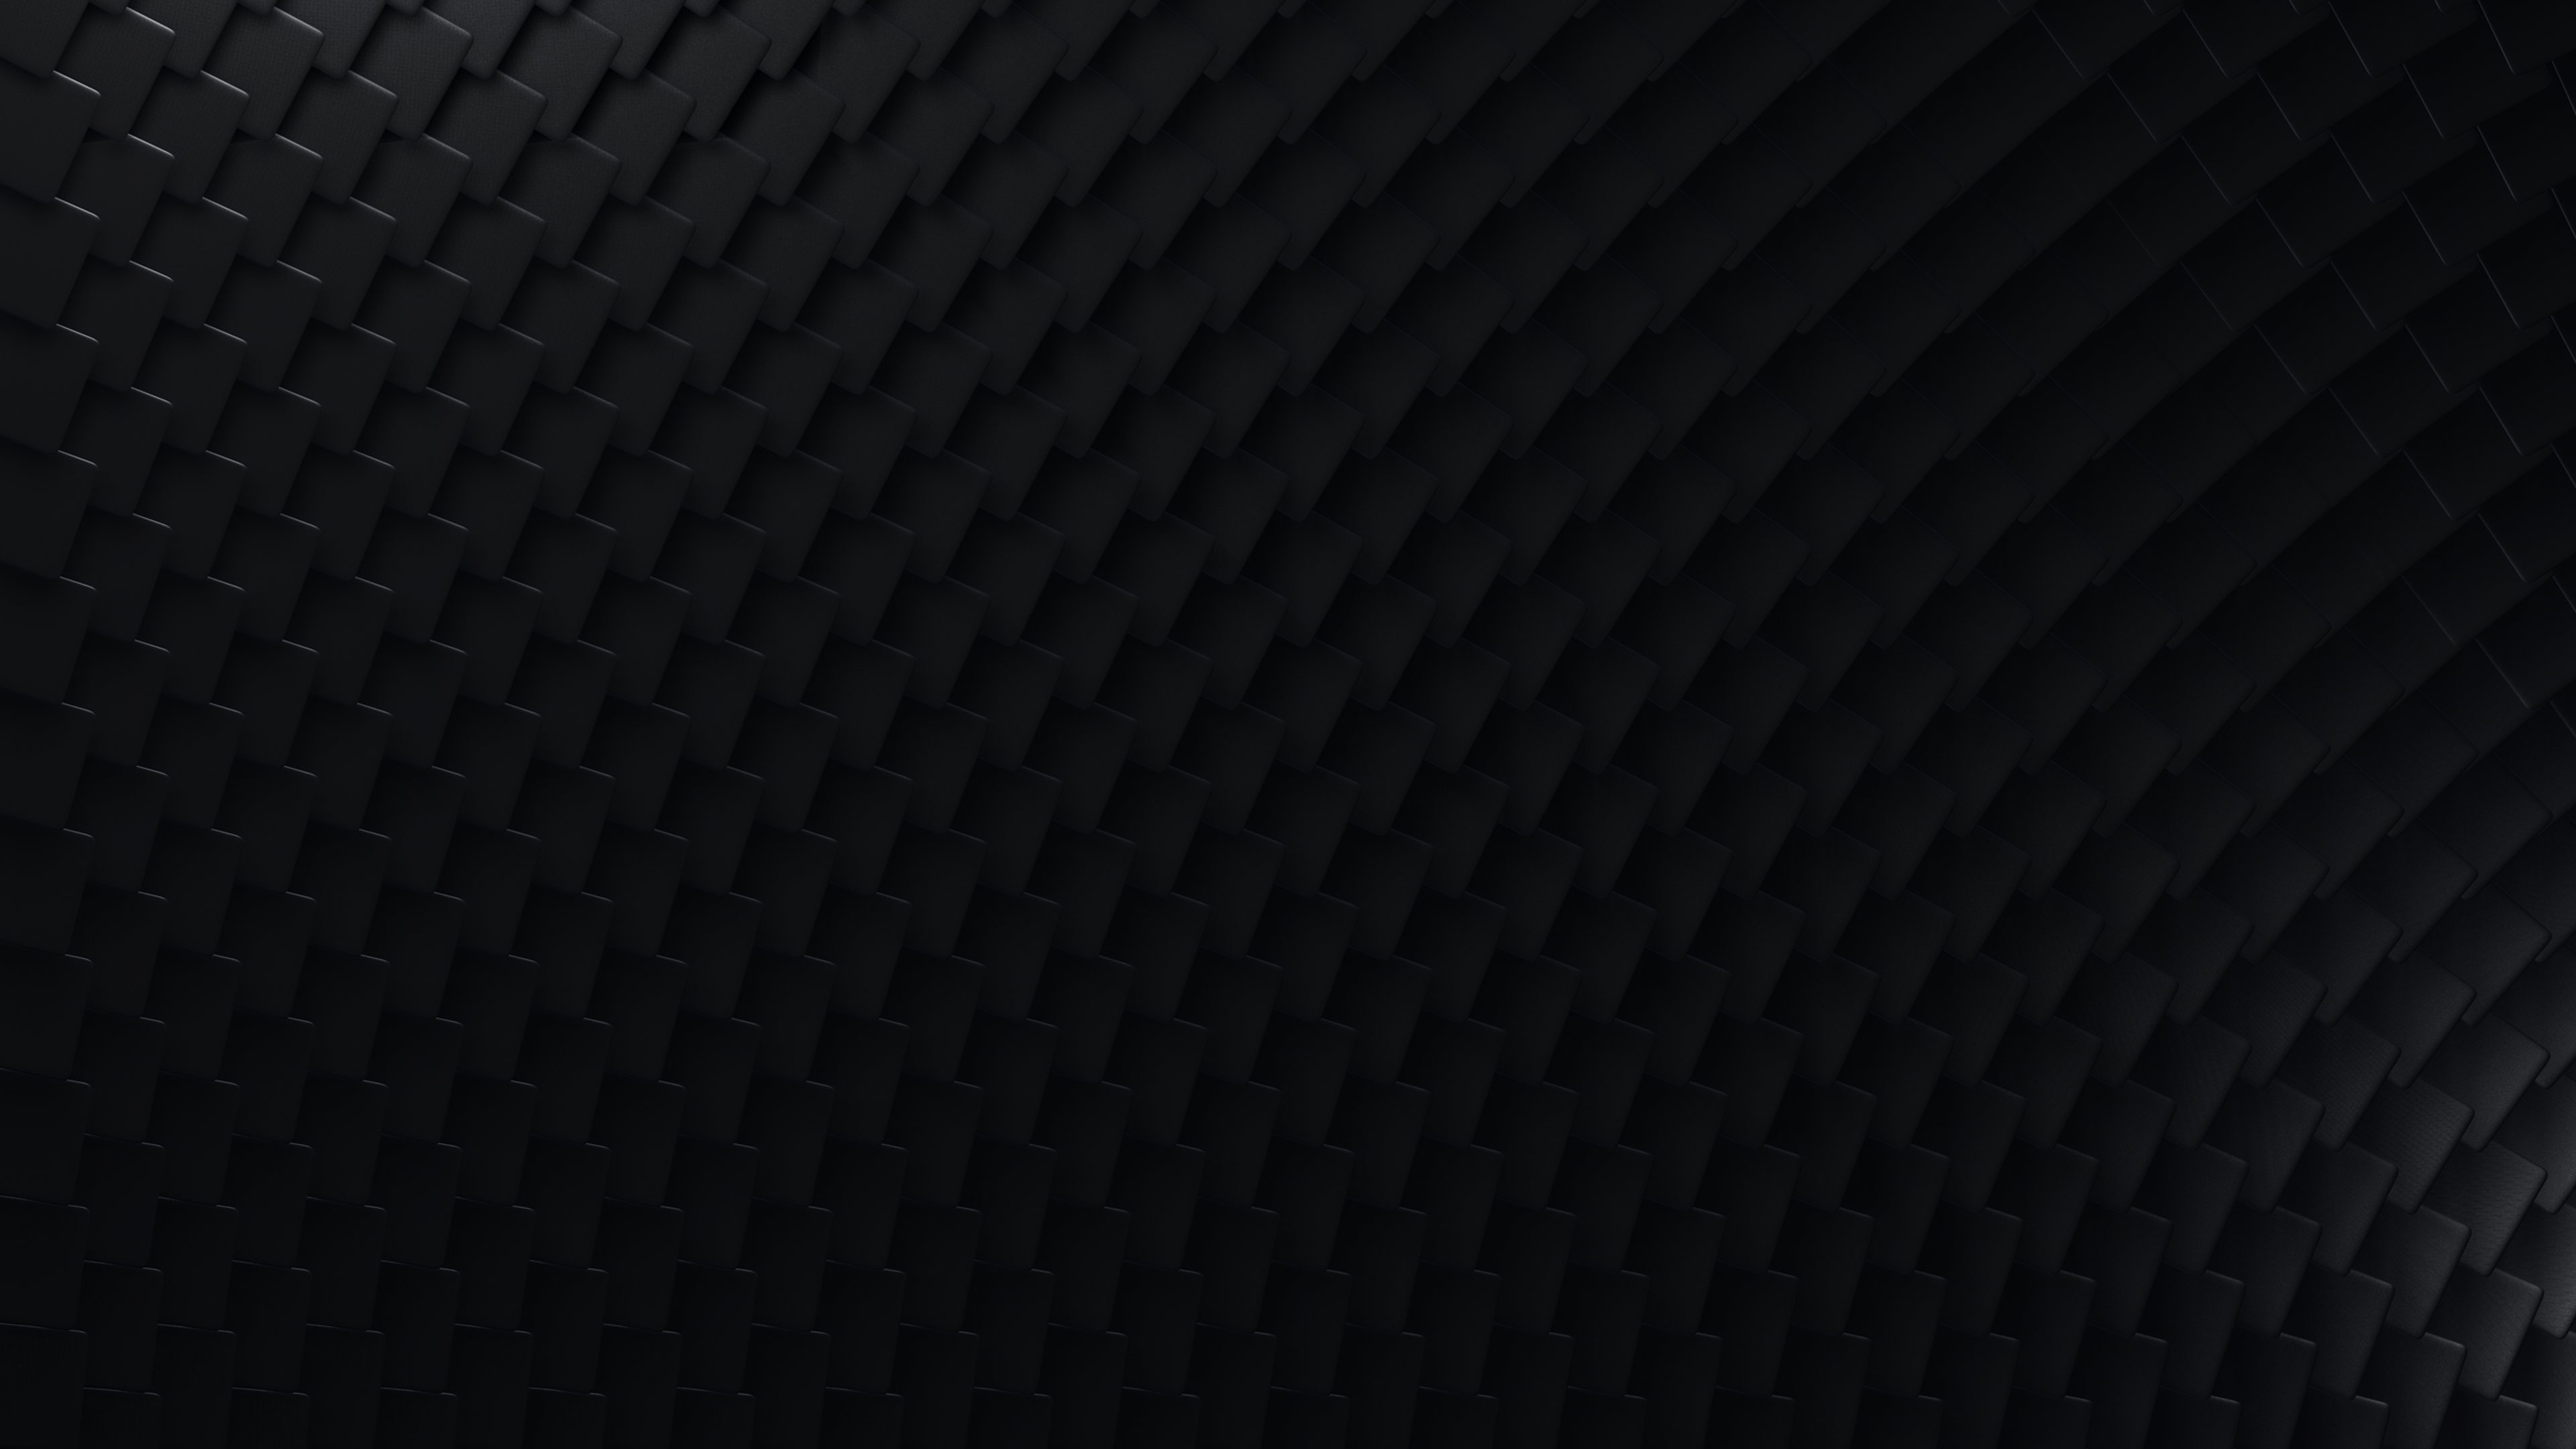 4K Dark Desktop Wallpapers - Top Free 4K Dark Desktop Backgrounds